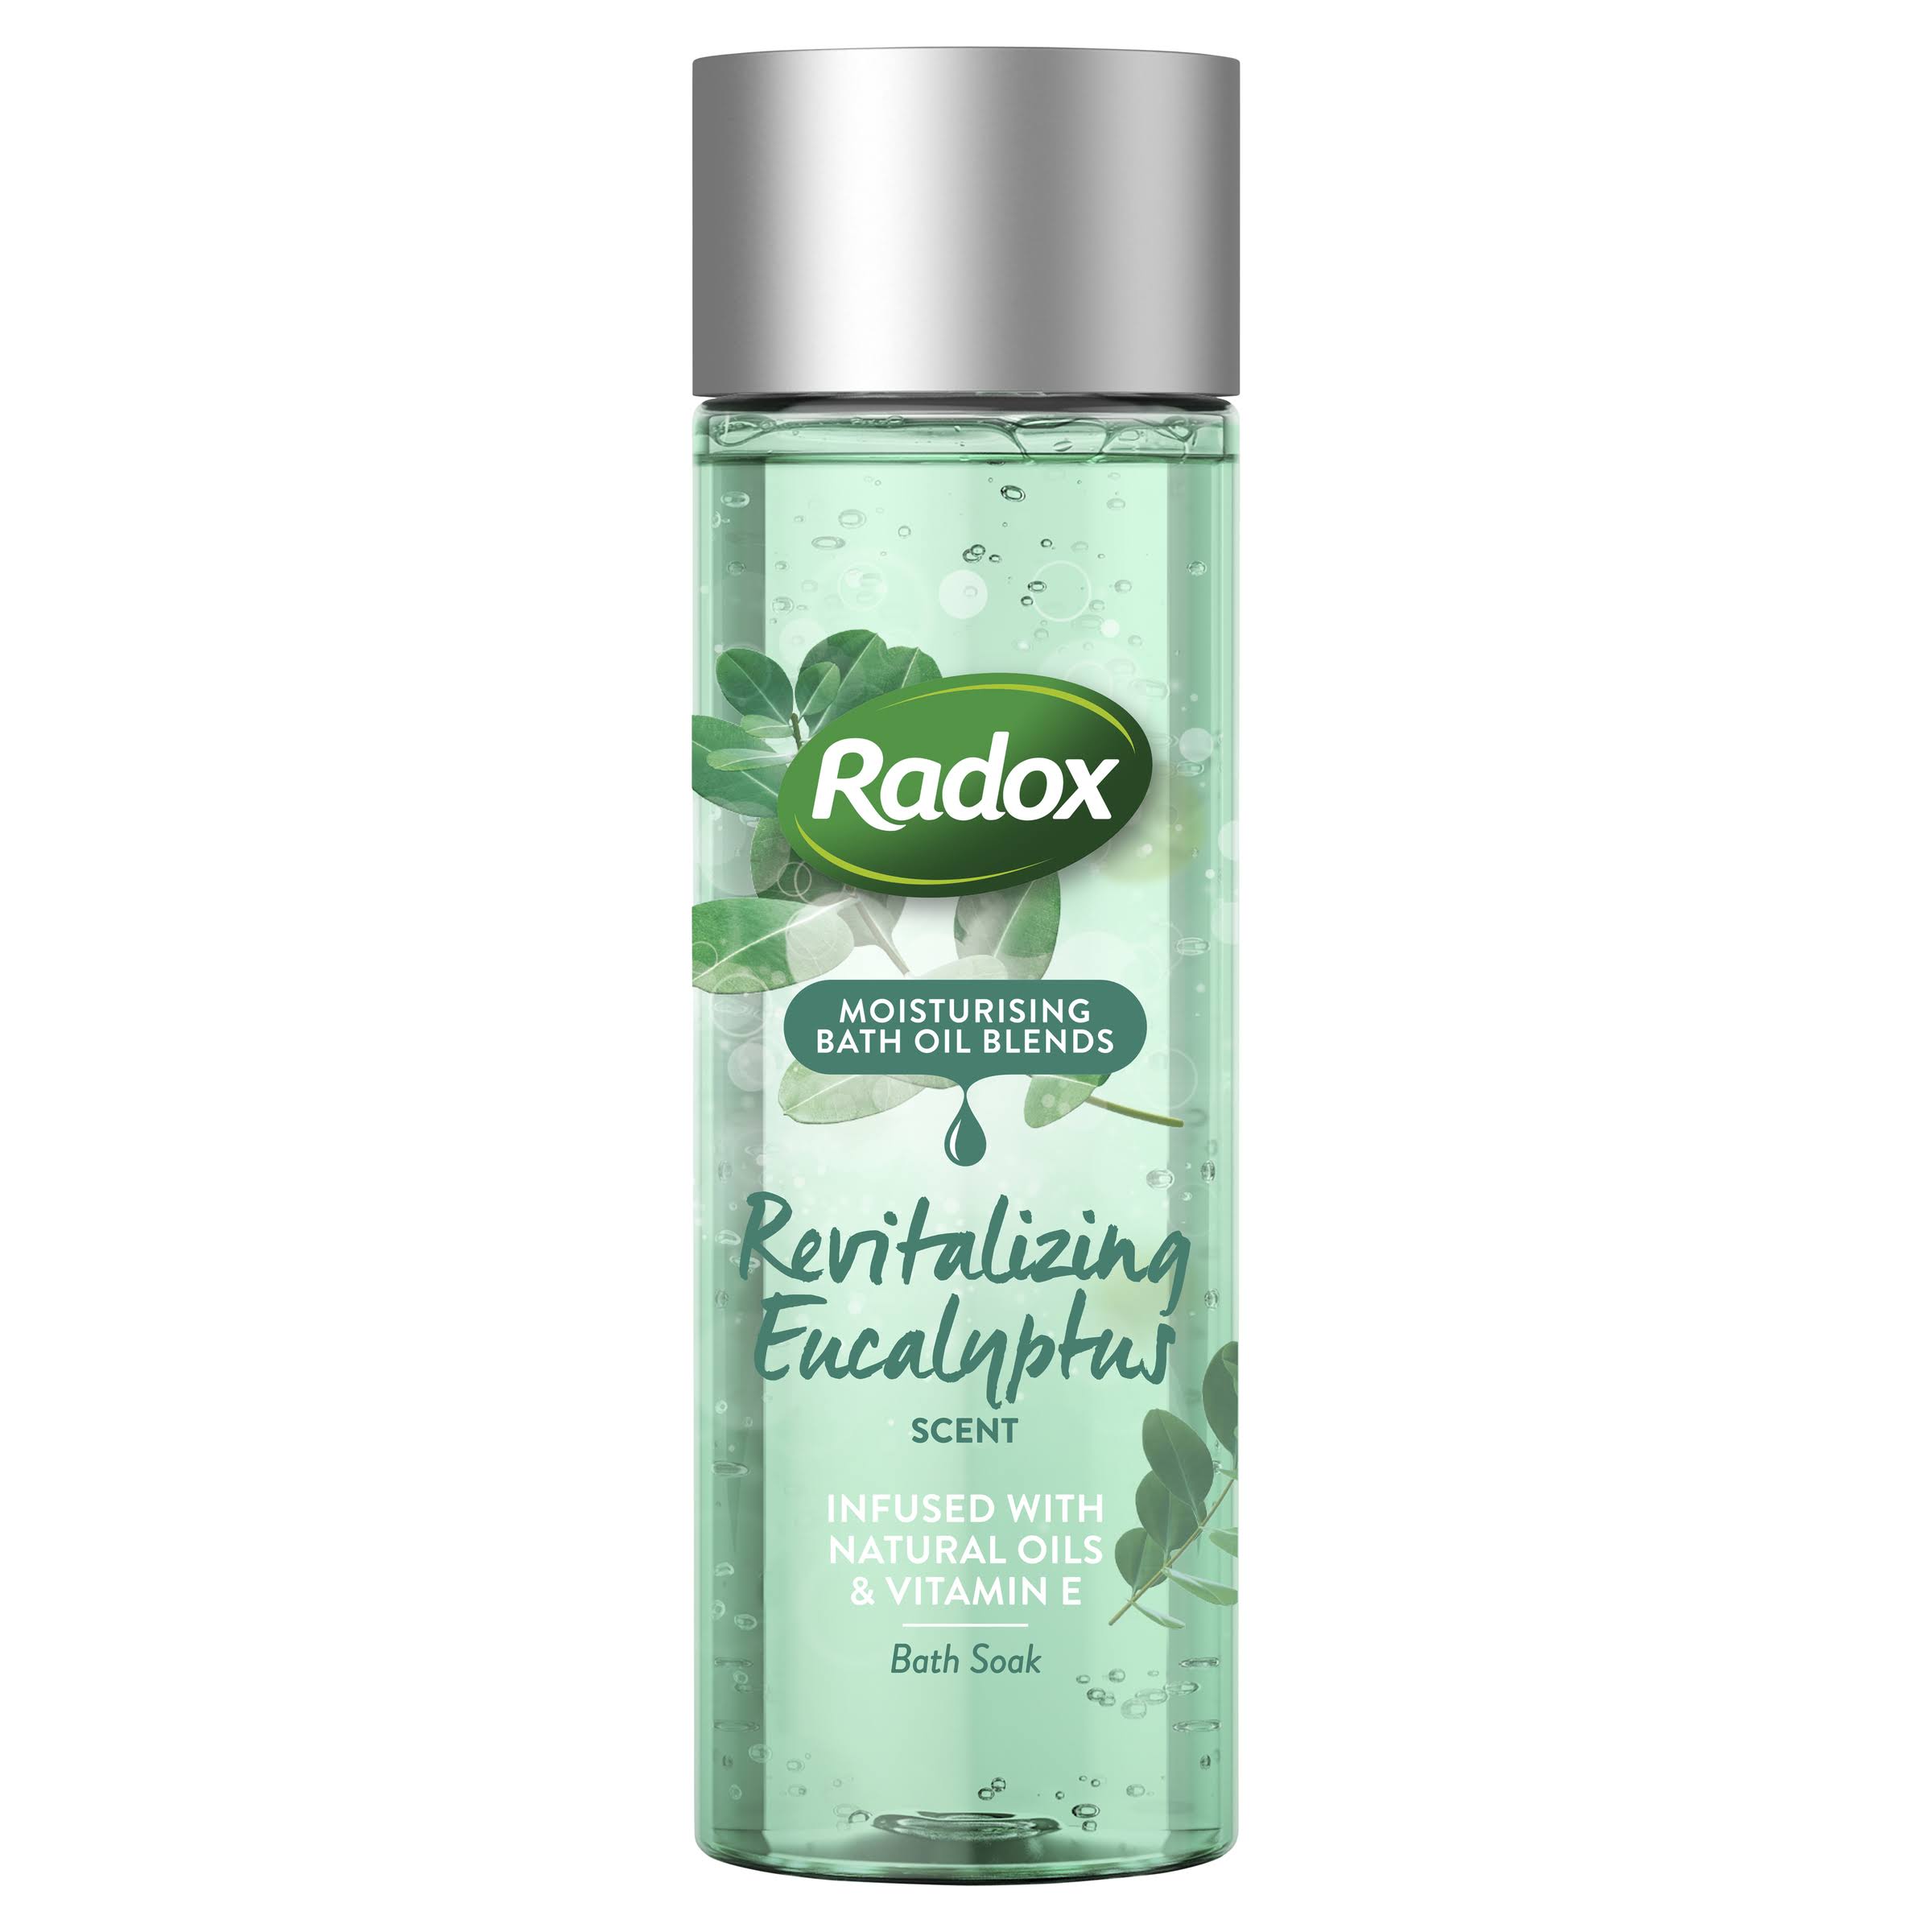 Radox Moisturising Bath Oil Blends Revitalizing Eucalyptus 200ml